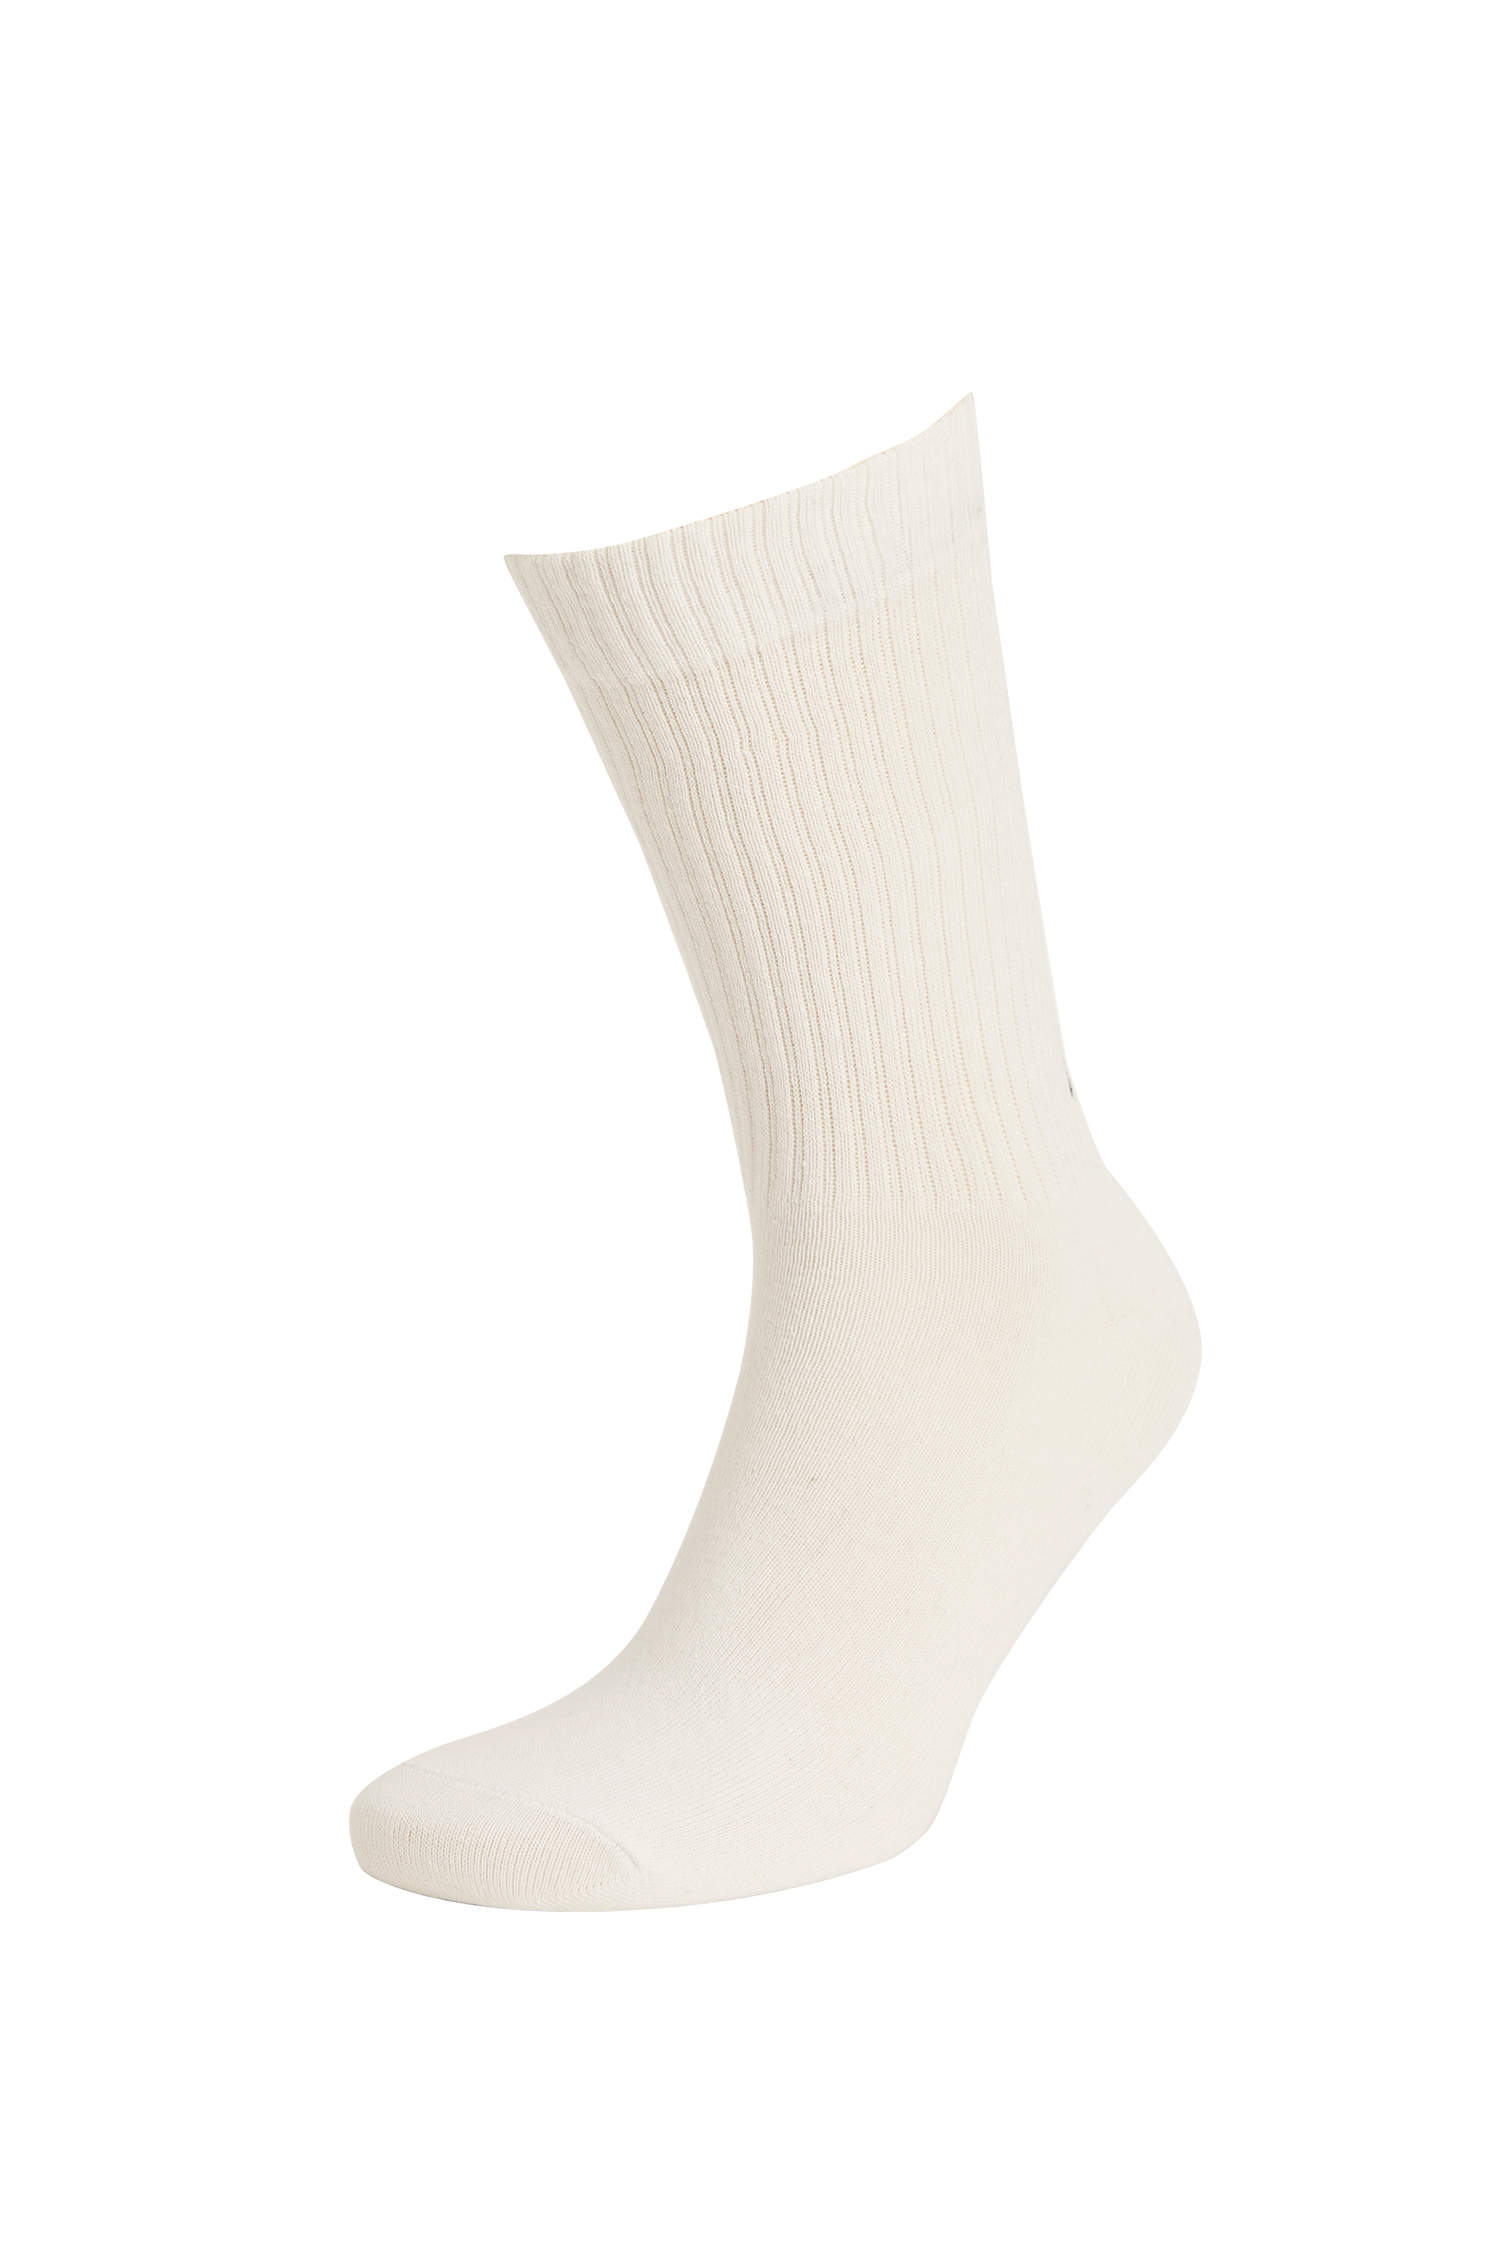 Defacto Slogan İşlemeli 3'lü Soket Çorap. 3